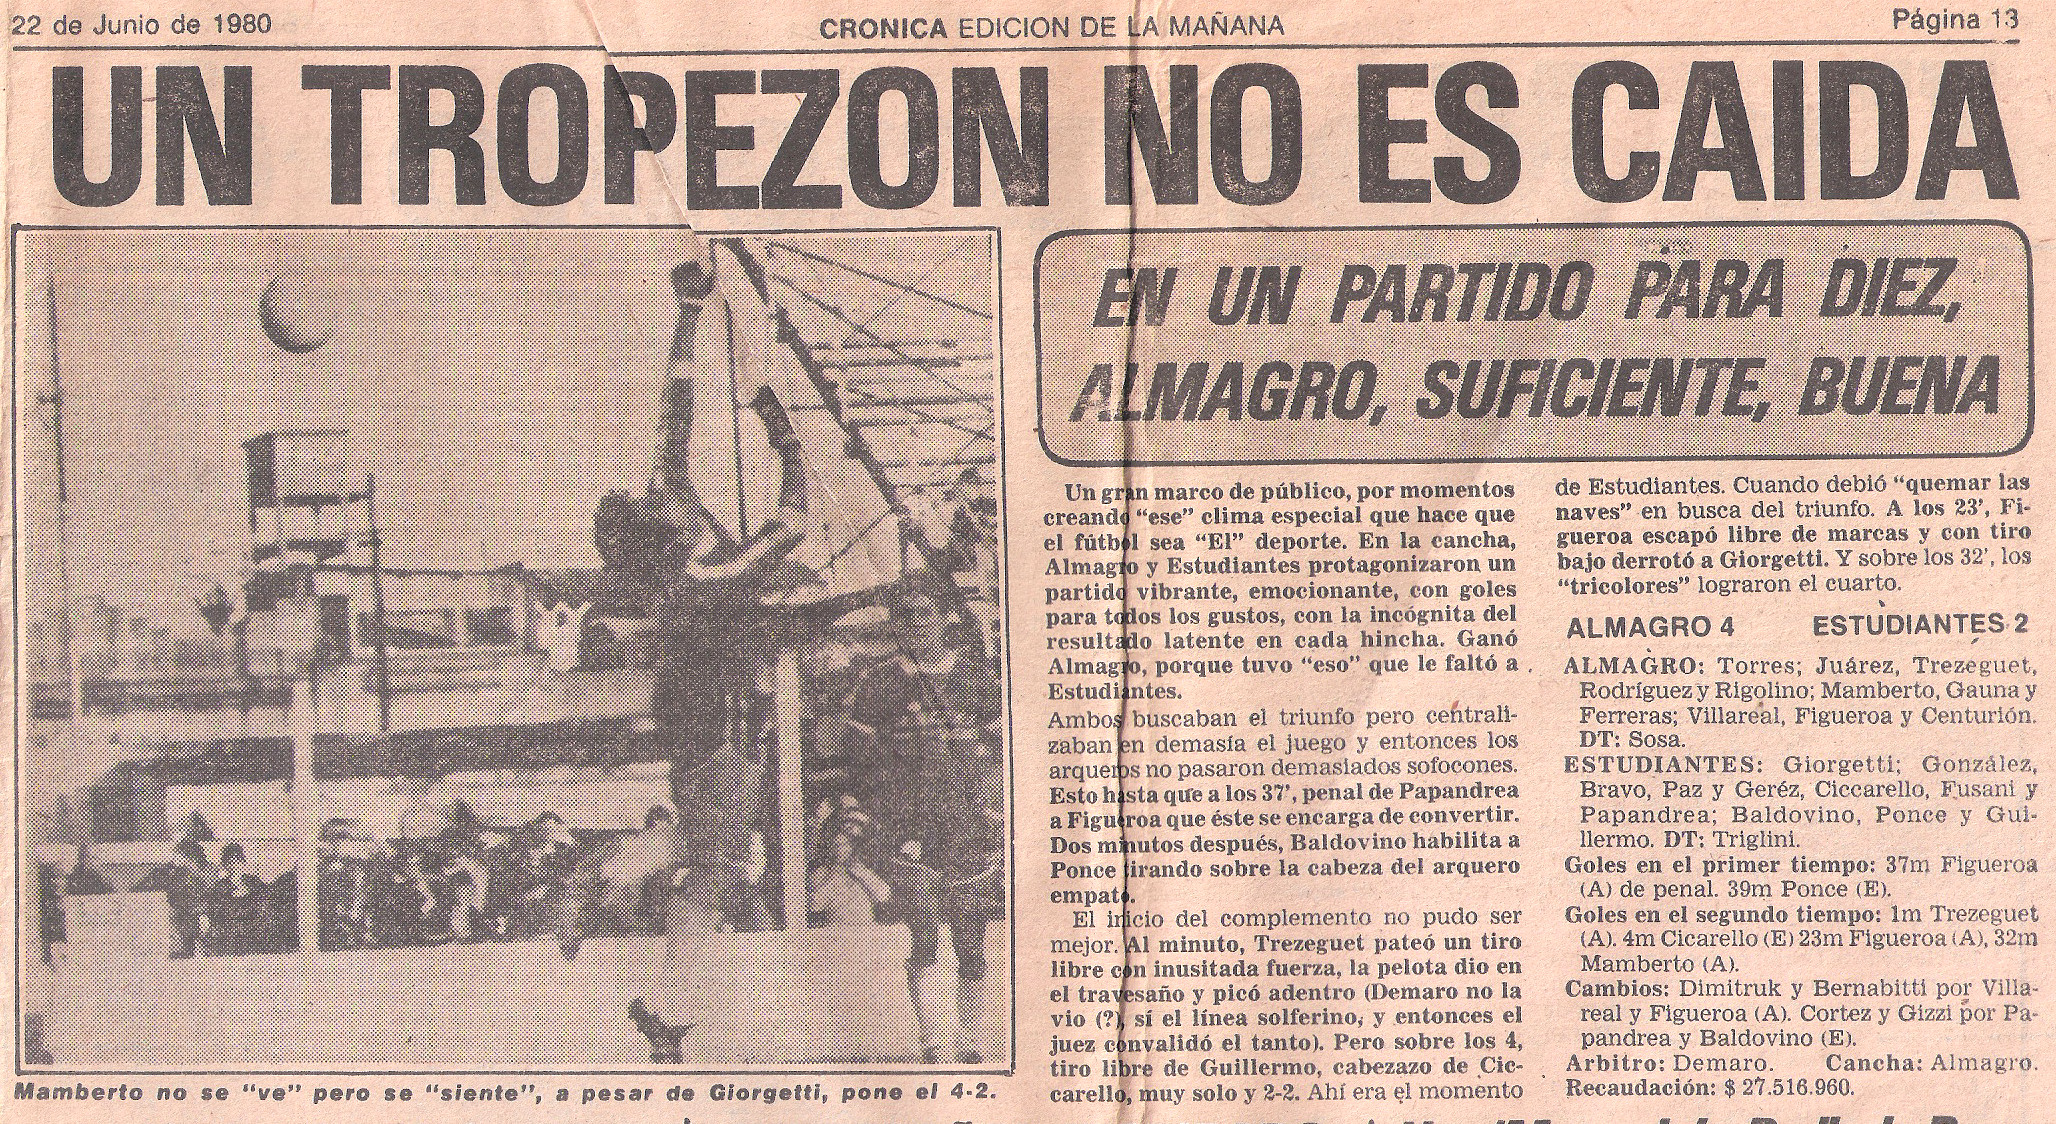 21-6-1980-almagro-estudiantesba-diario-cronica